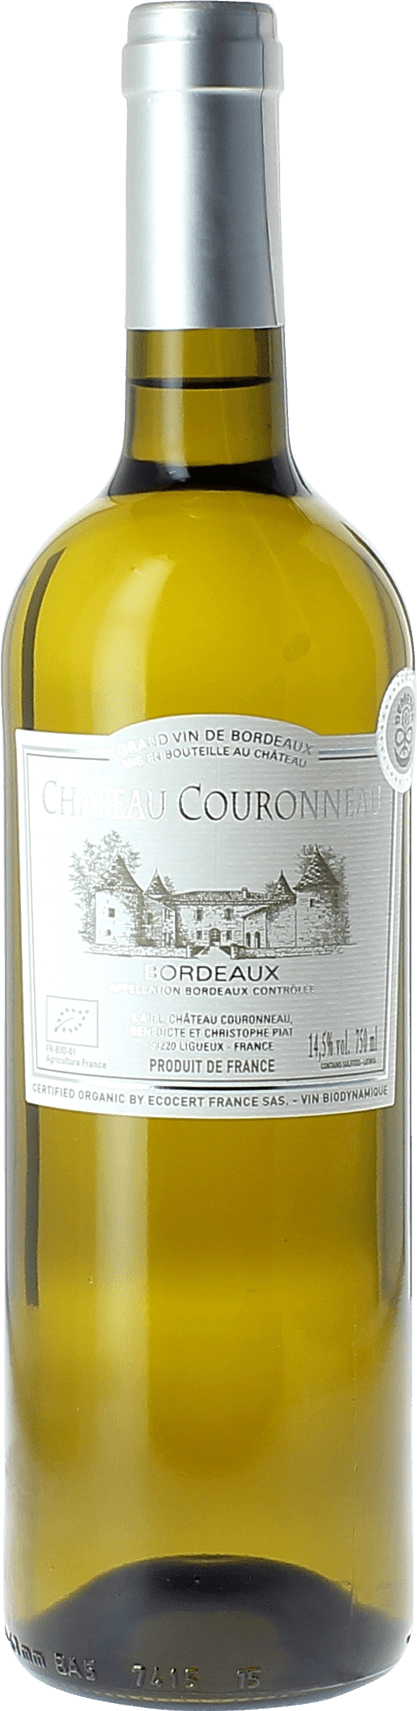 Chteau couronneau certifi bio 2016  Bordeaux, Slection Bordeaux blanc